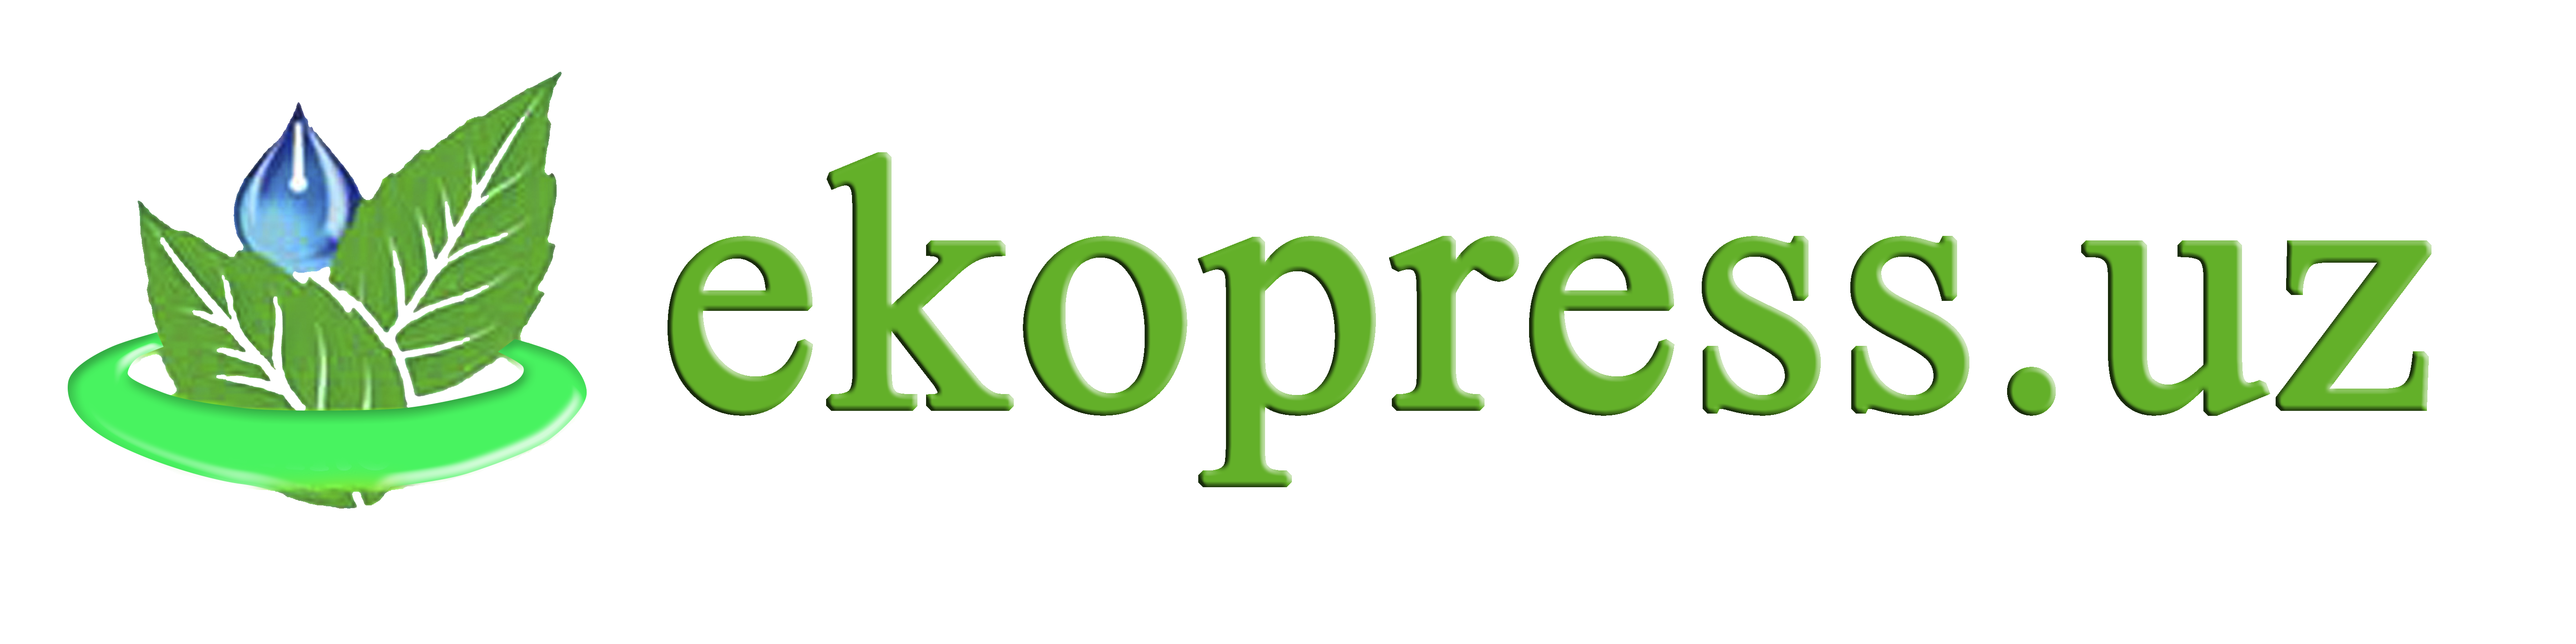 Ekopress.uz  экологик-ҳуқуқий, ижтимоий-сиёсий веб-сайти